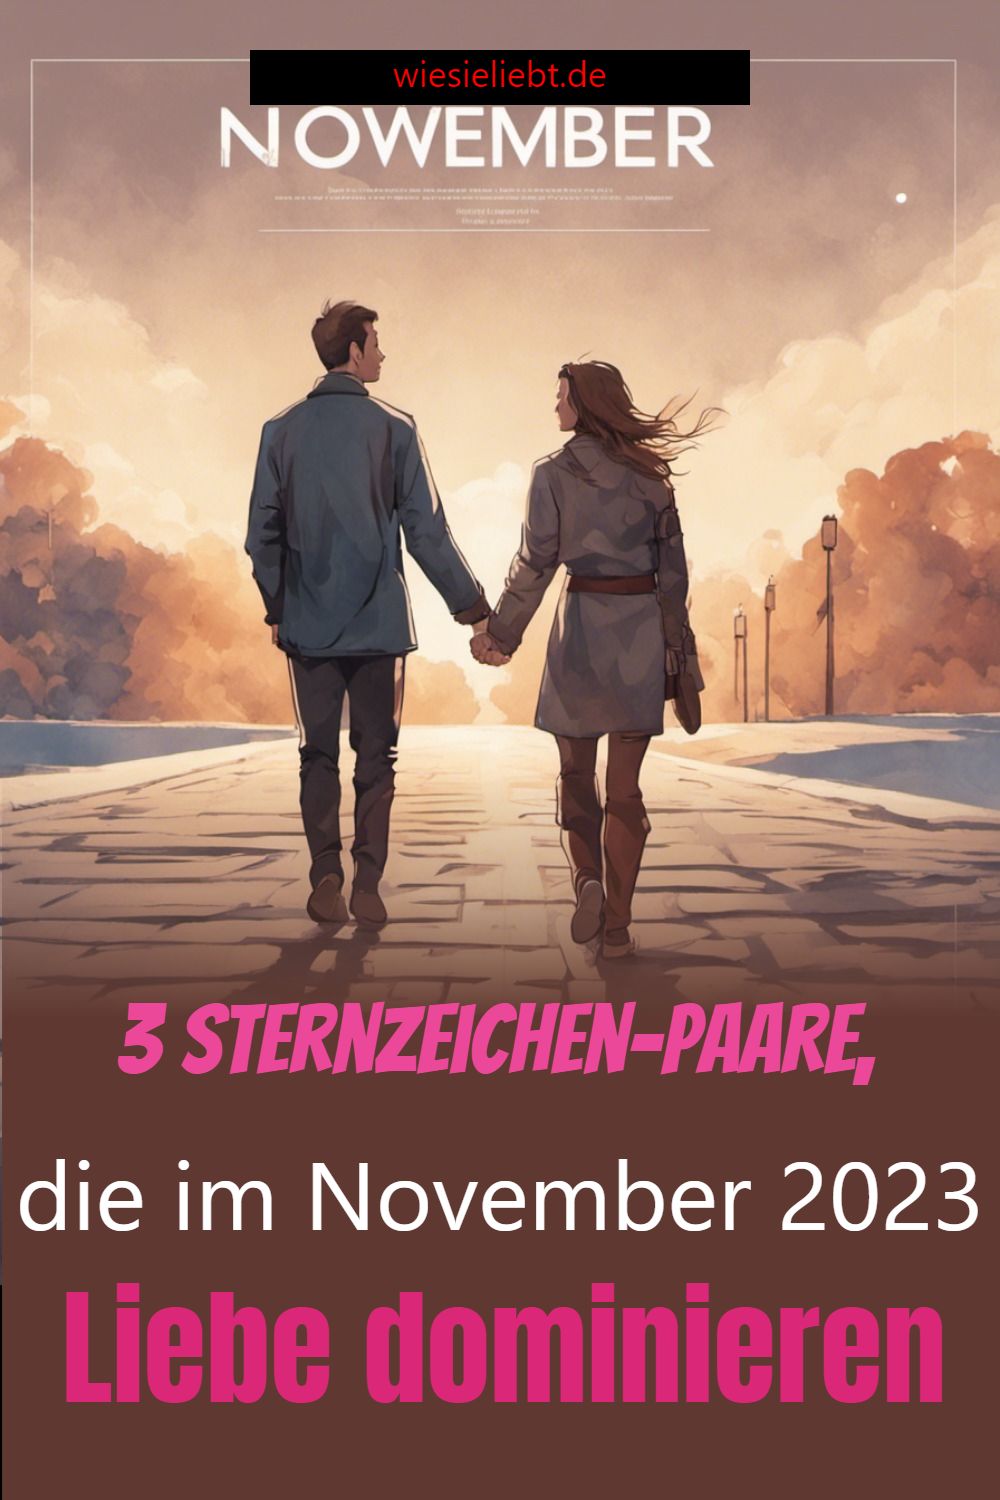 3 Sternzeichen-Paare, die im November 2023 Liebe dominieren